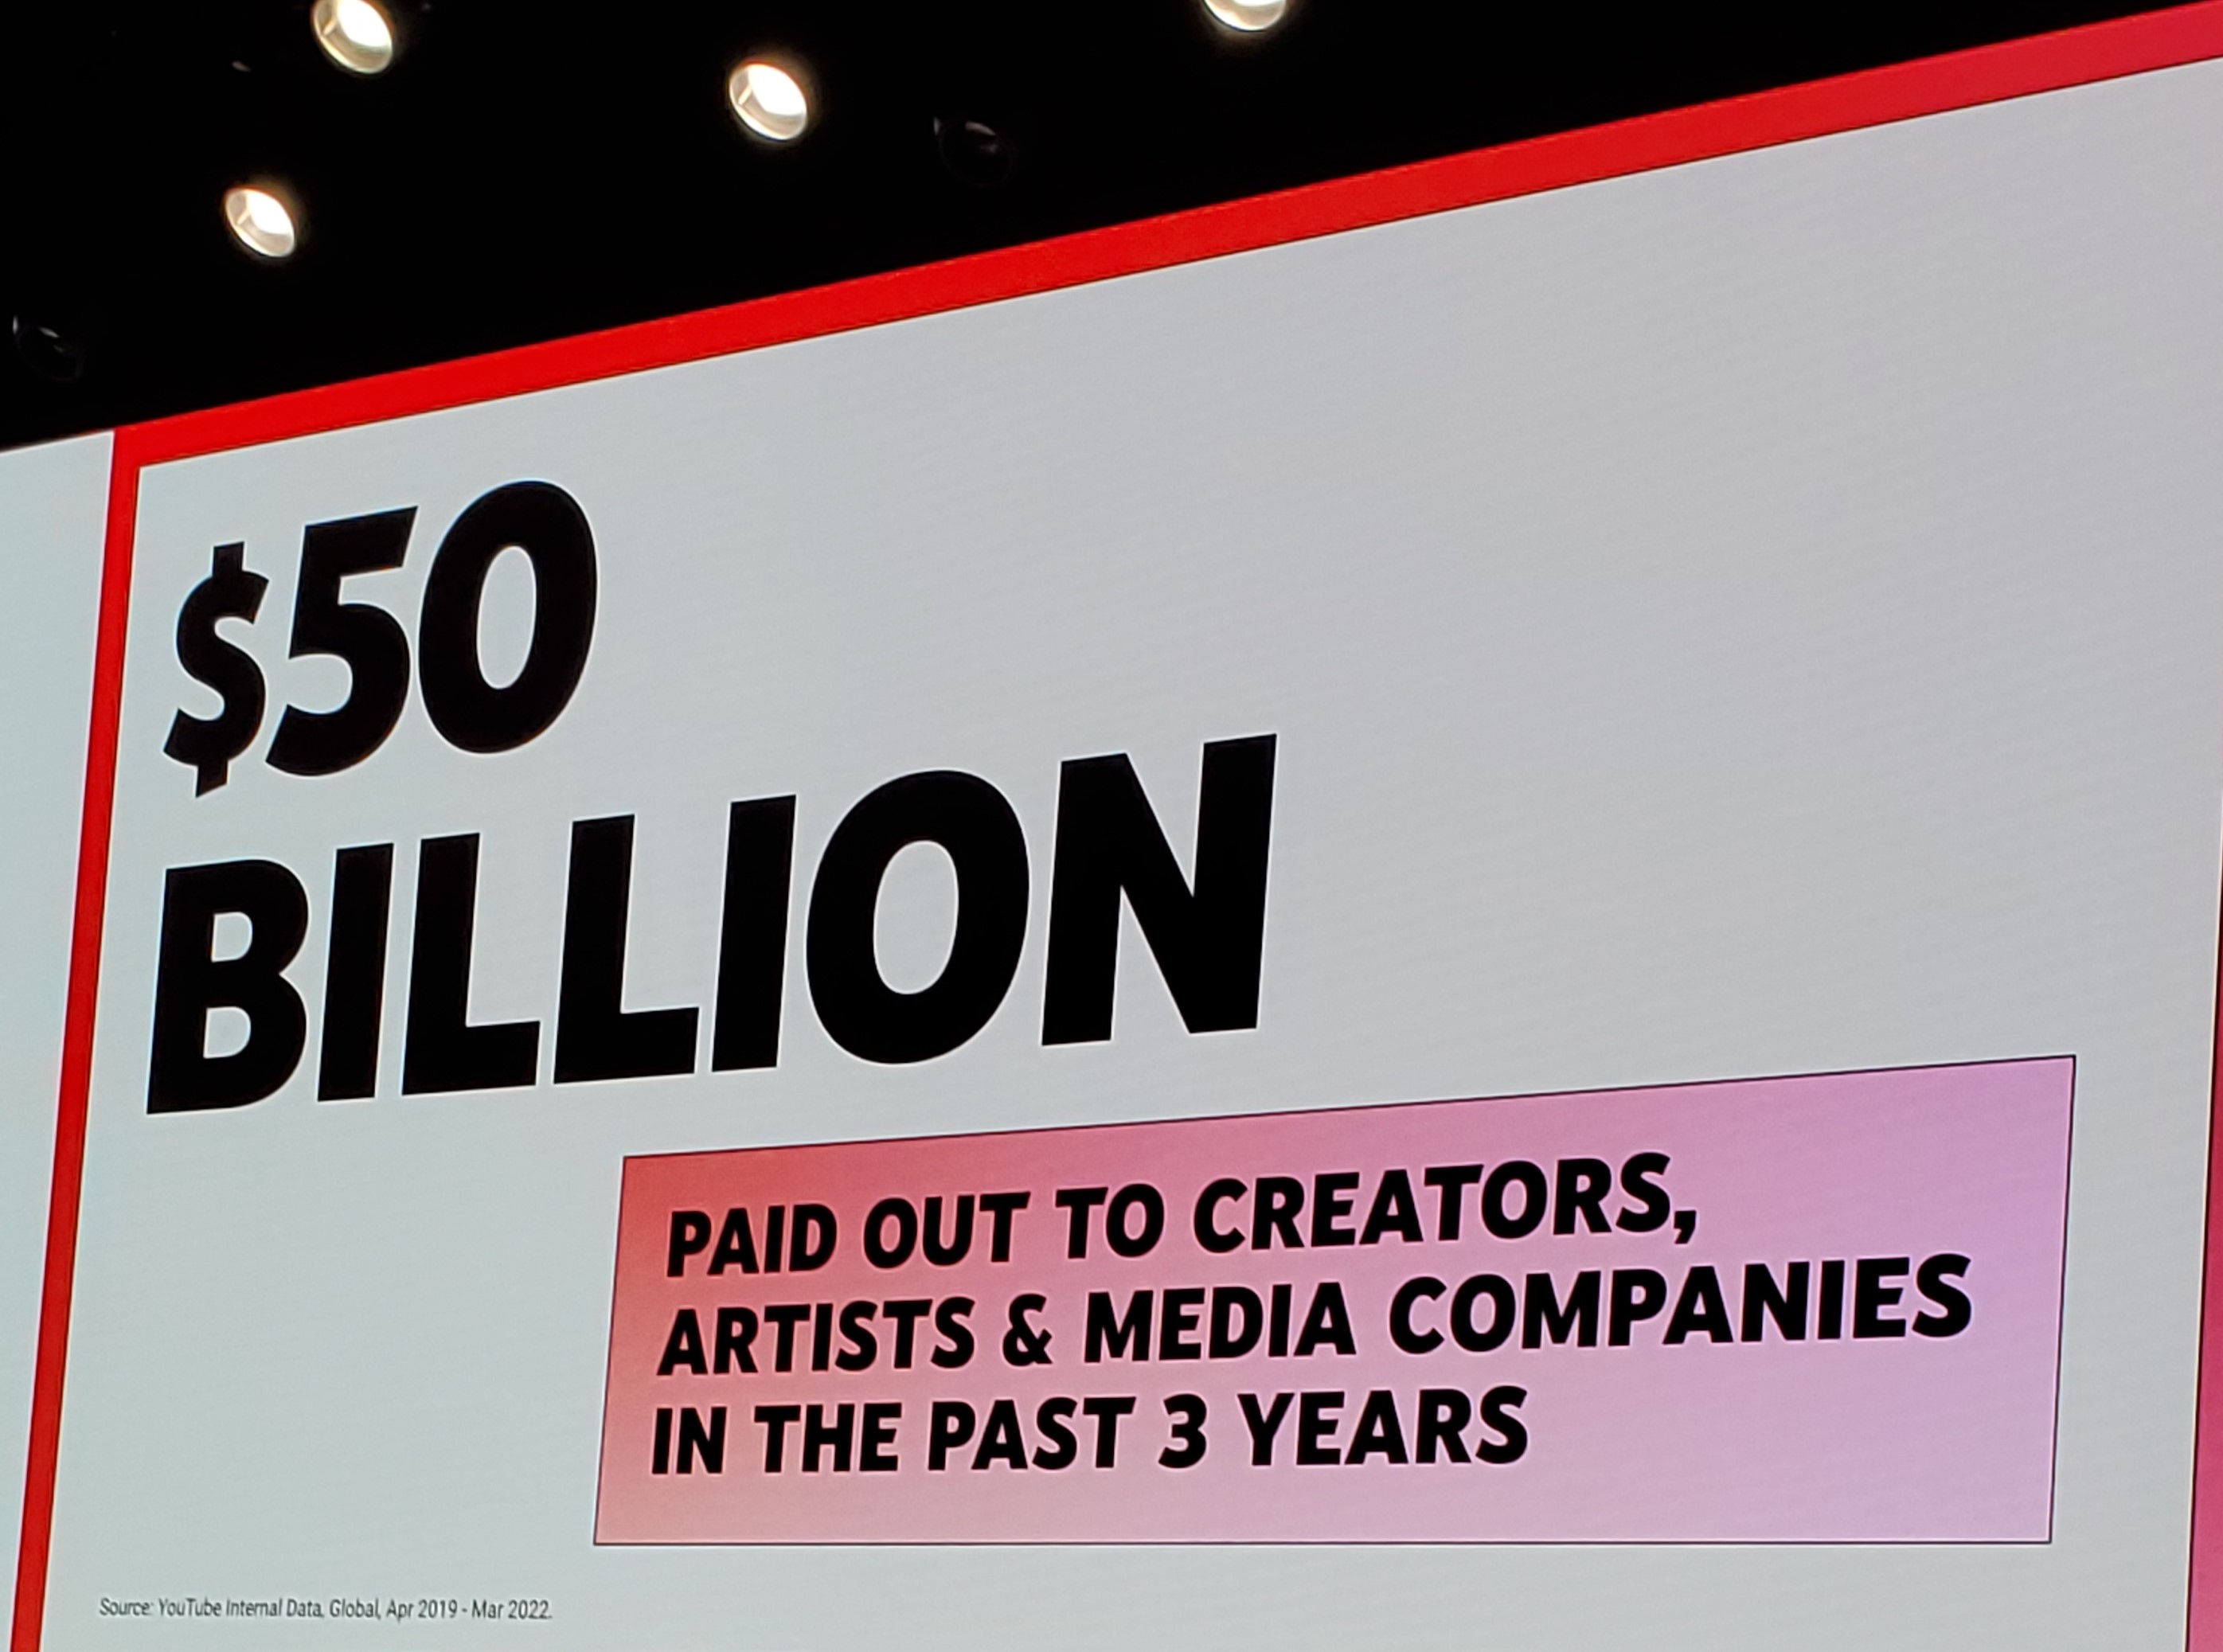 Ingresos de YouTube de $ 50 mil millones pagados a creadores, artistas y compañías de medios